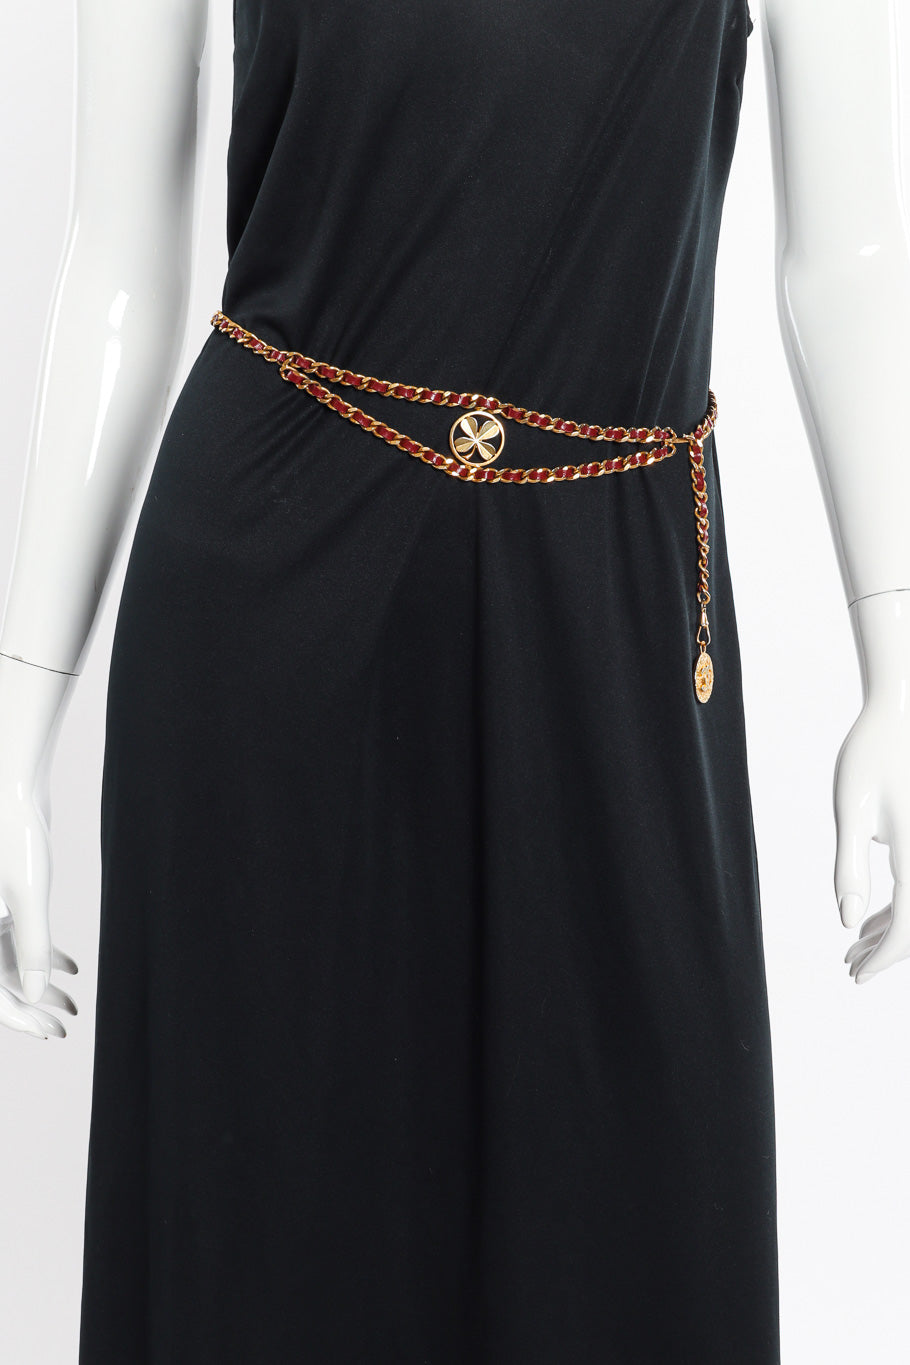 Vintage Chanel Clover Charm Belt on mannequin @recessla